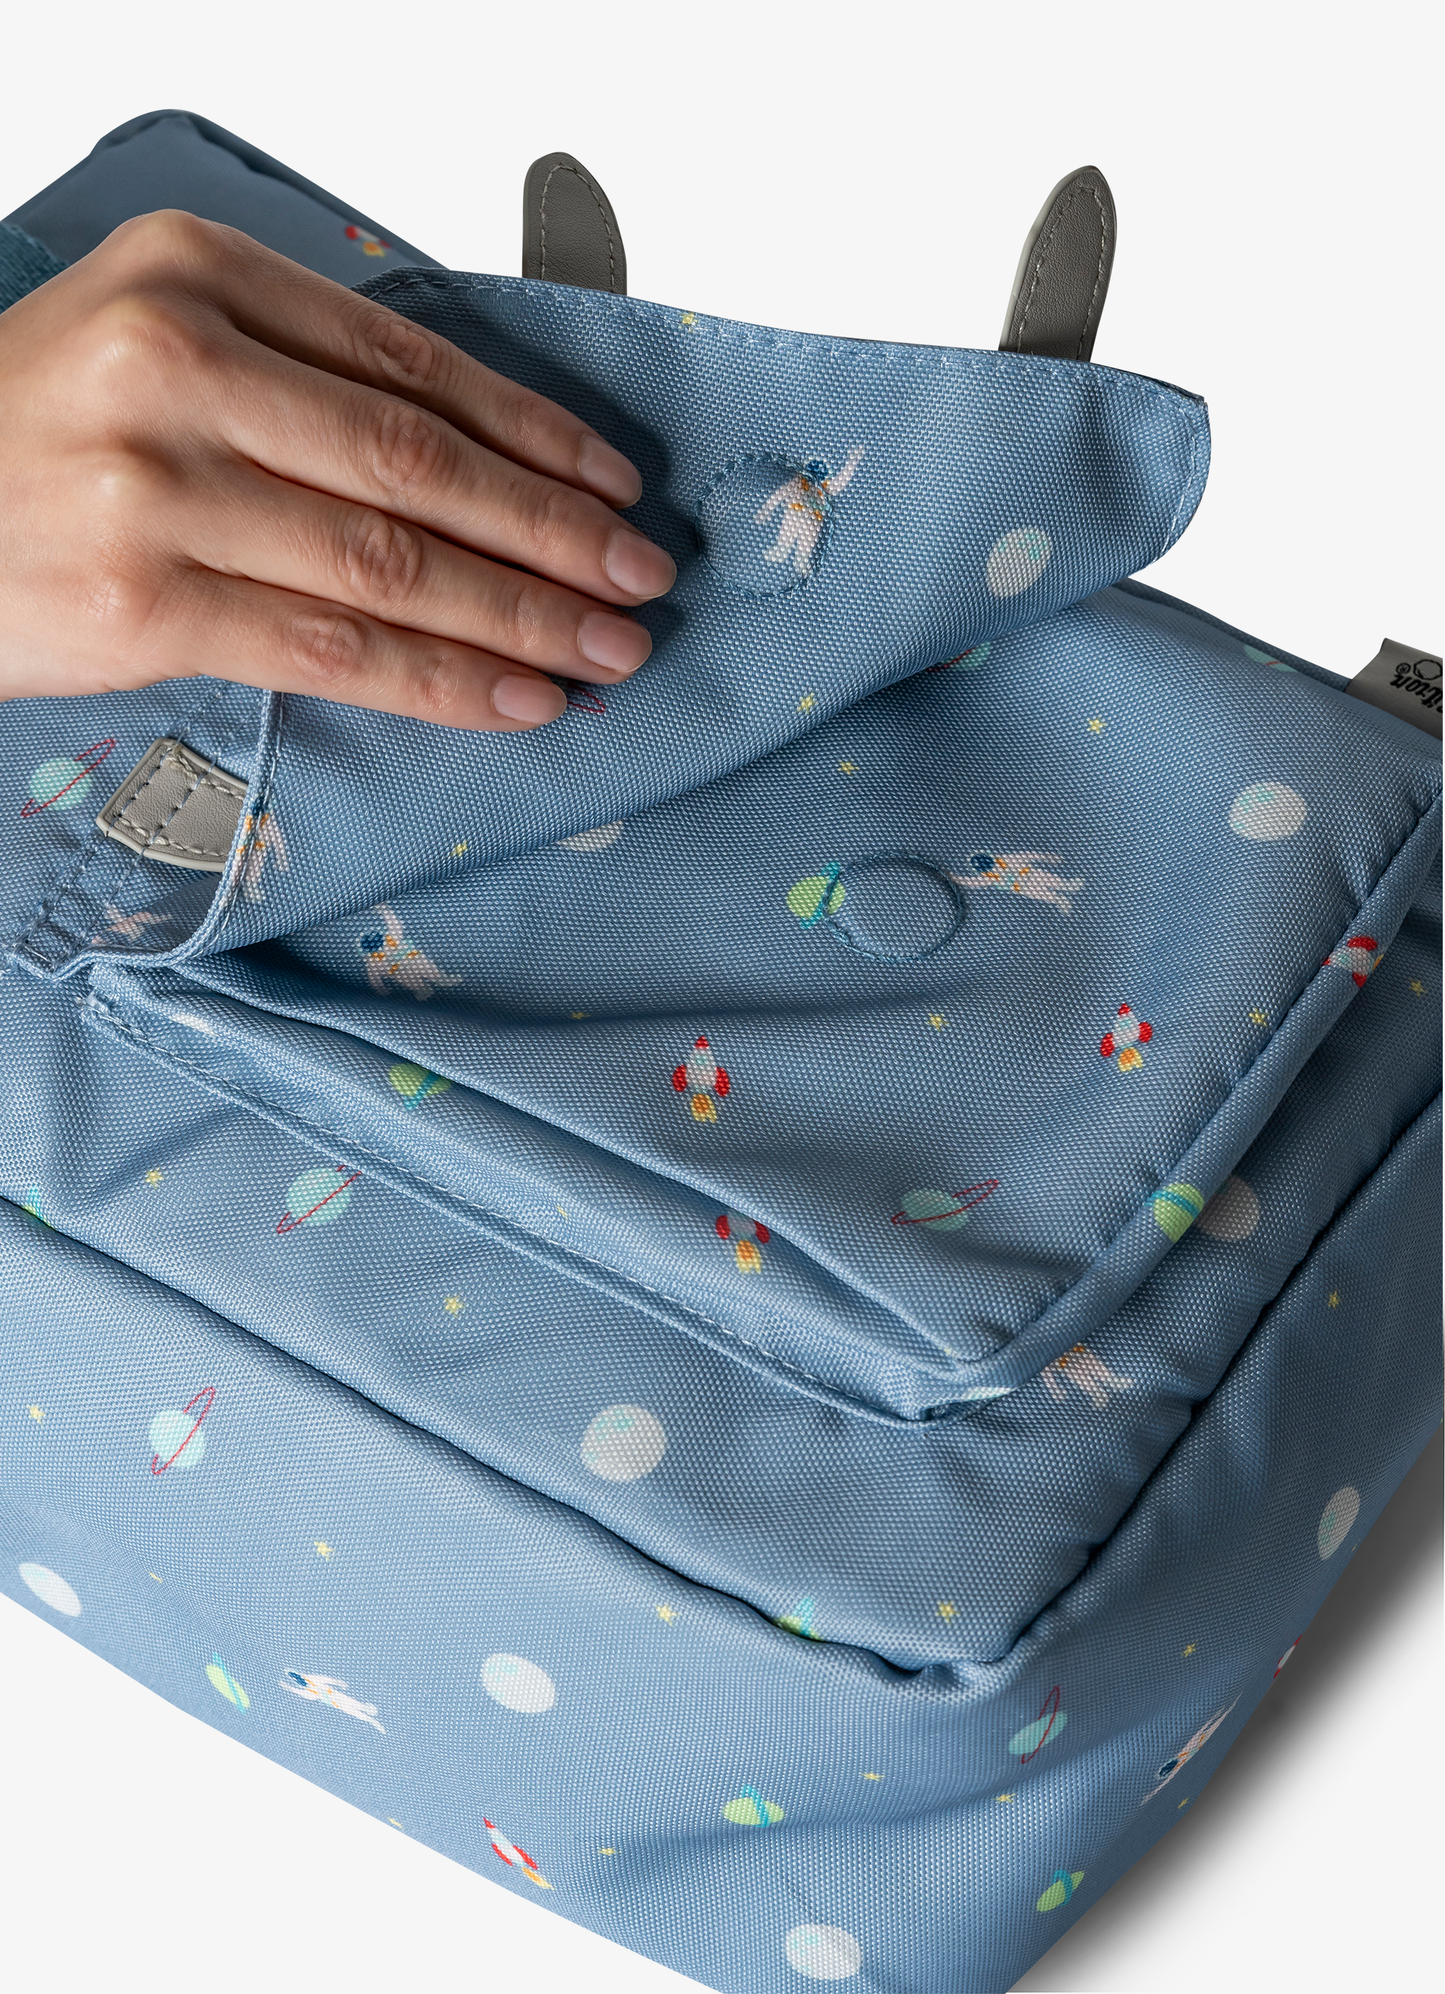 حقيبة ظهر للأطفال- أزرق مع طبعة سفينة فضاء